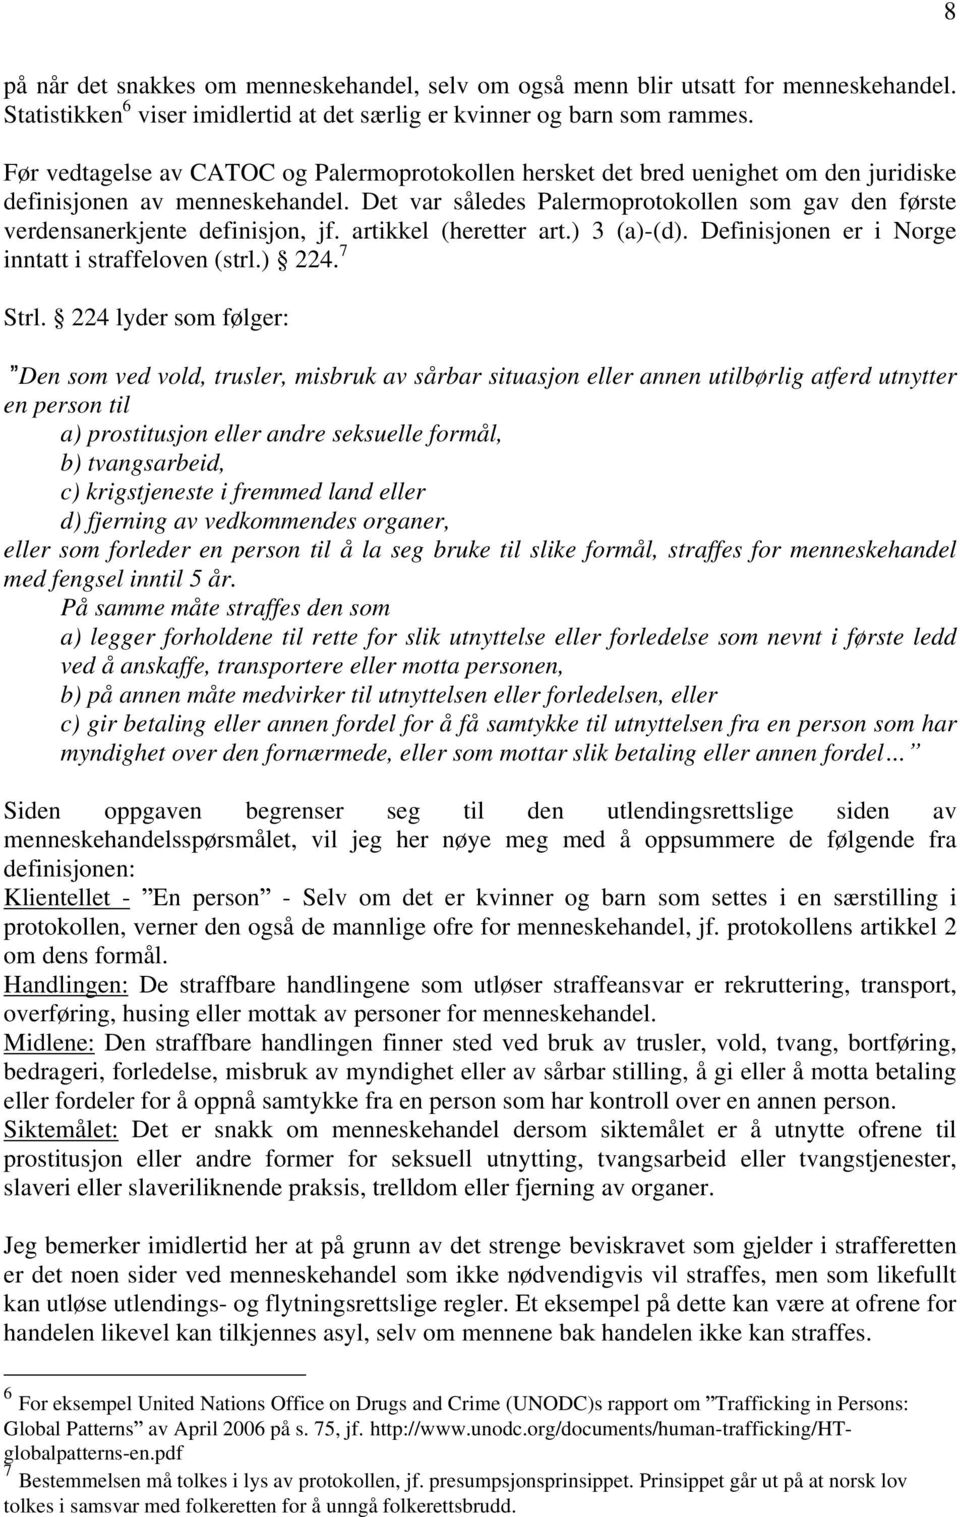 Det var således Palermoprotokollen som gav den første verdensanerkjente definisjon, jf. artikkel (heretter art.) 3 (a)-(d). Definisjonen er i Norge inntatt i straffeloven (strl.) 224. 7 Strl.